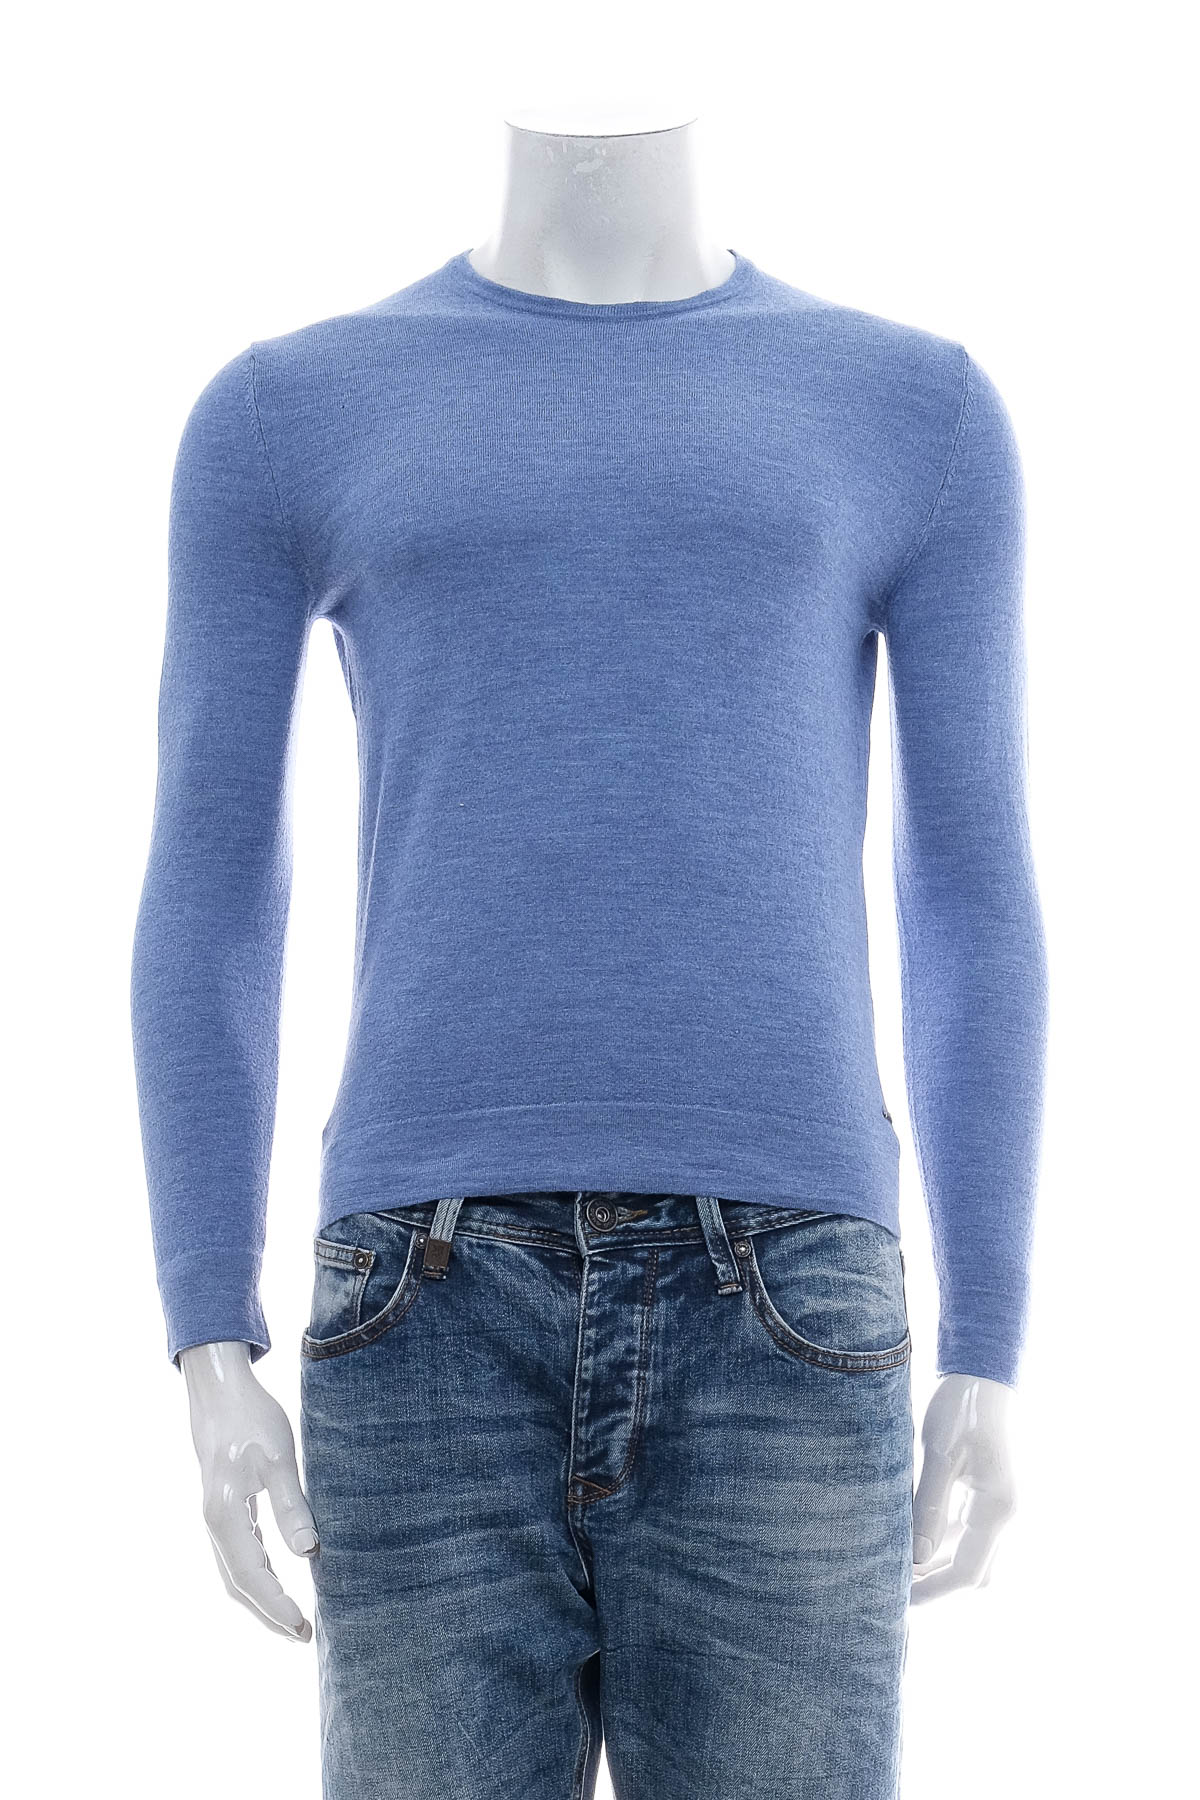 Men's sweater - Strellson - 0